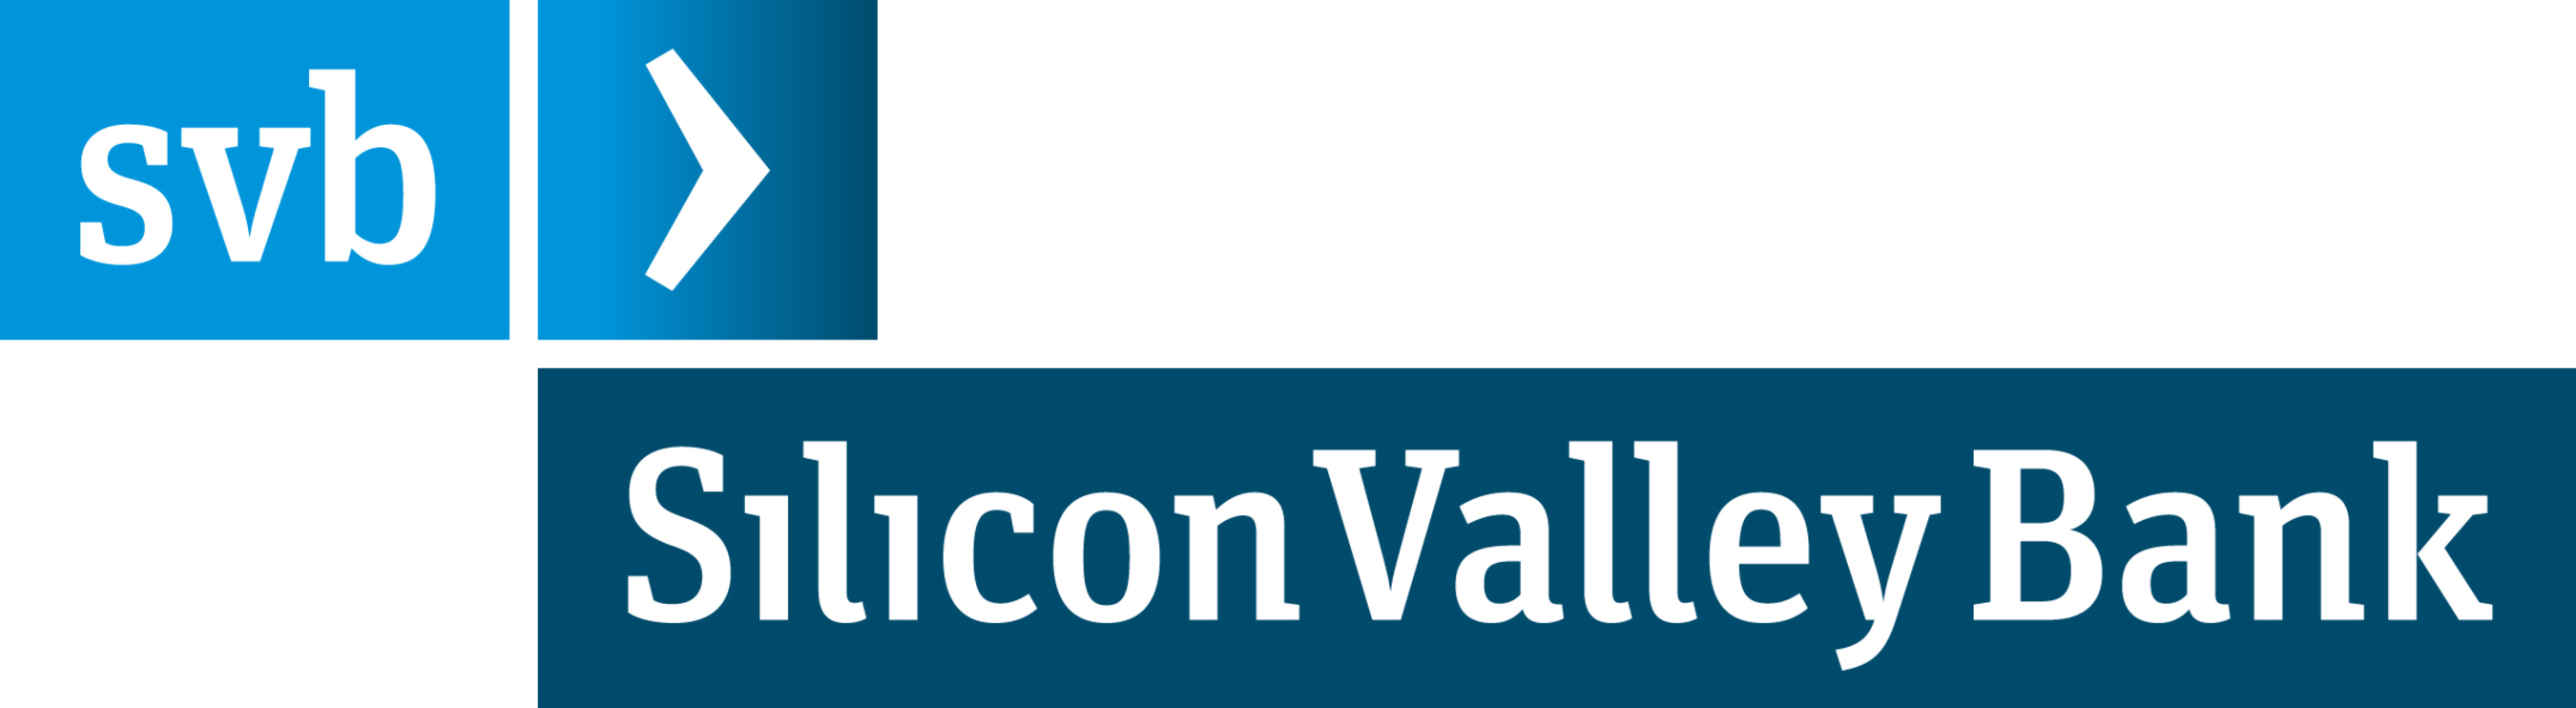 Silicon Valley Bank logo.